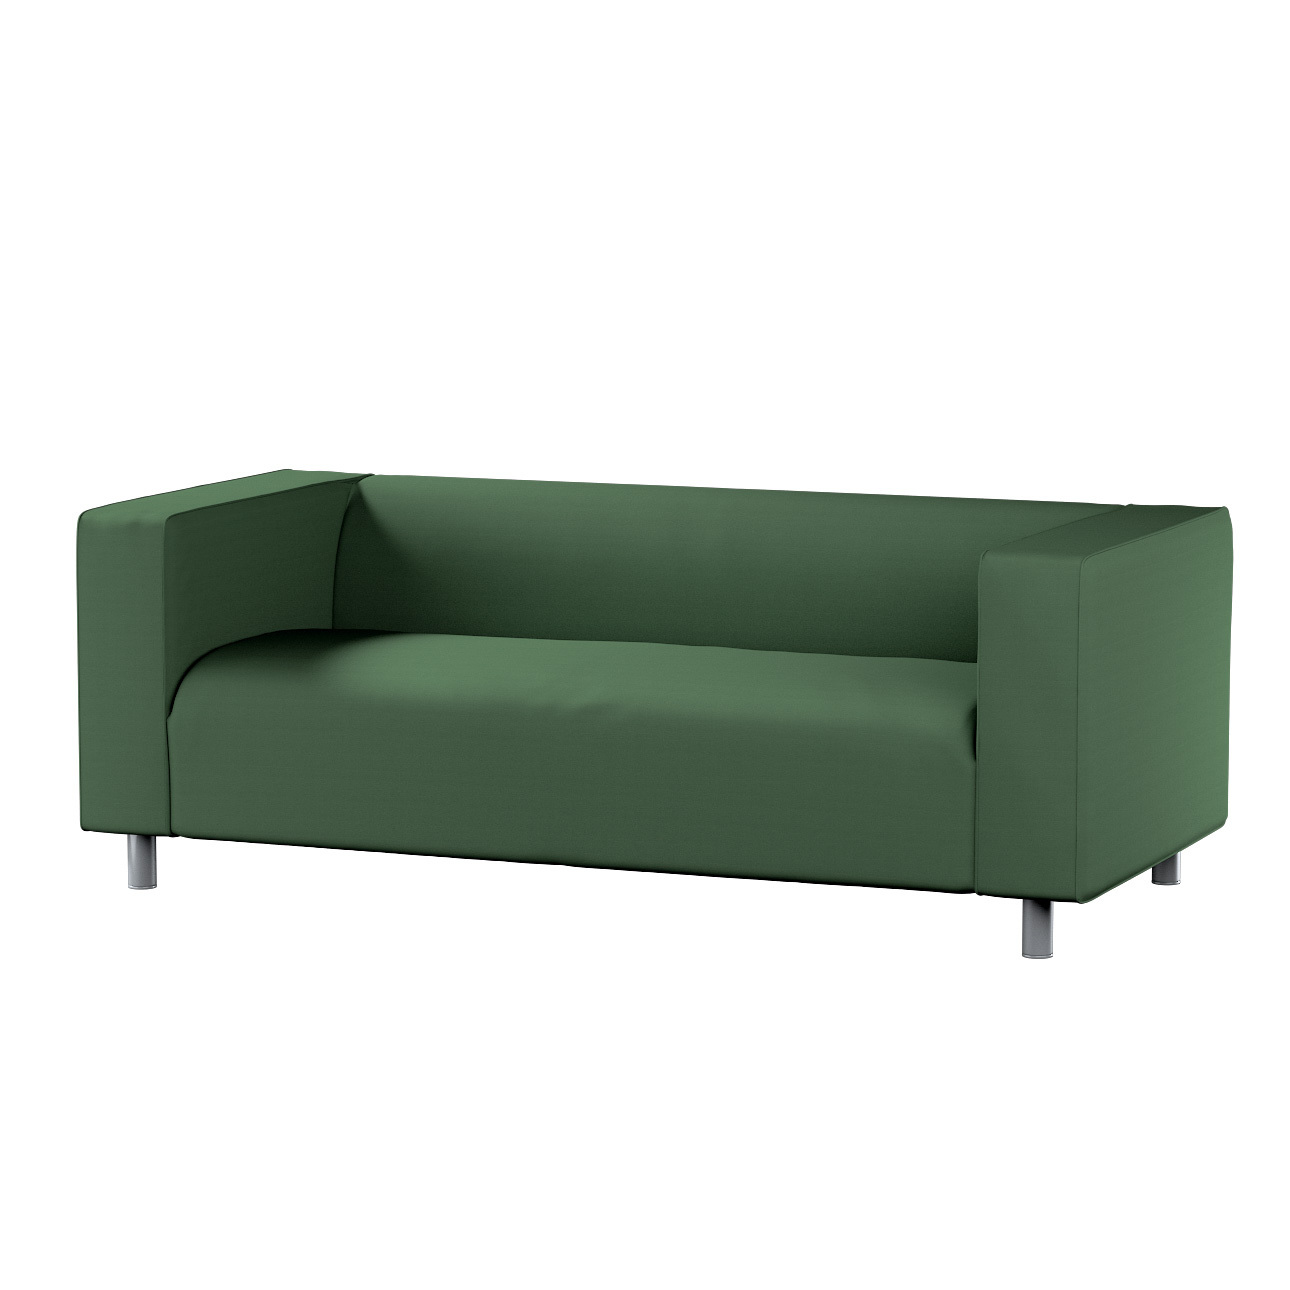 Bezug für Klippan 2-Sitzer Sofa, waldgrün, Sofahusse, Klippan 2-Sitzer, Cot günstig online kaufen